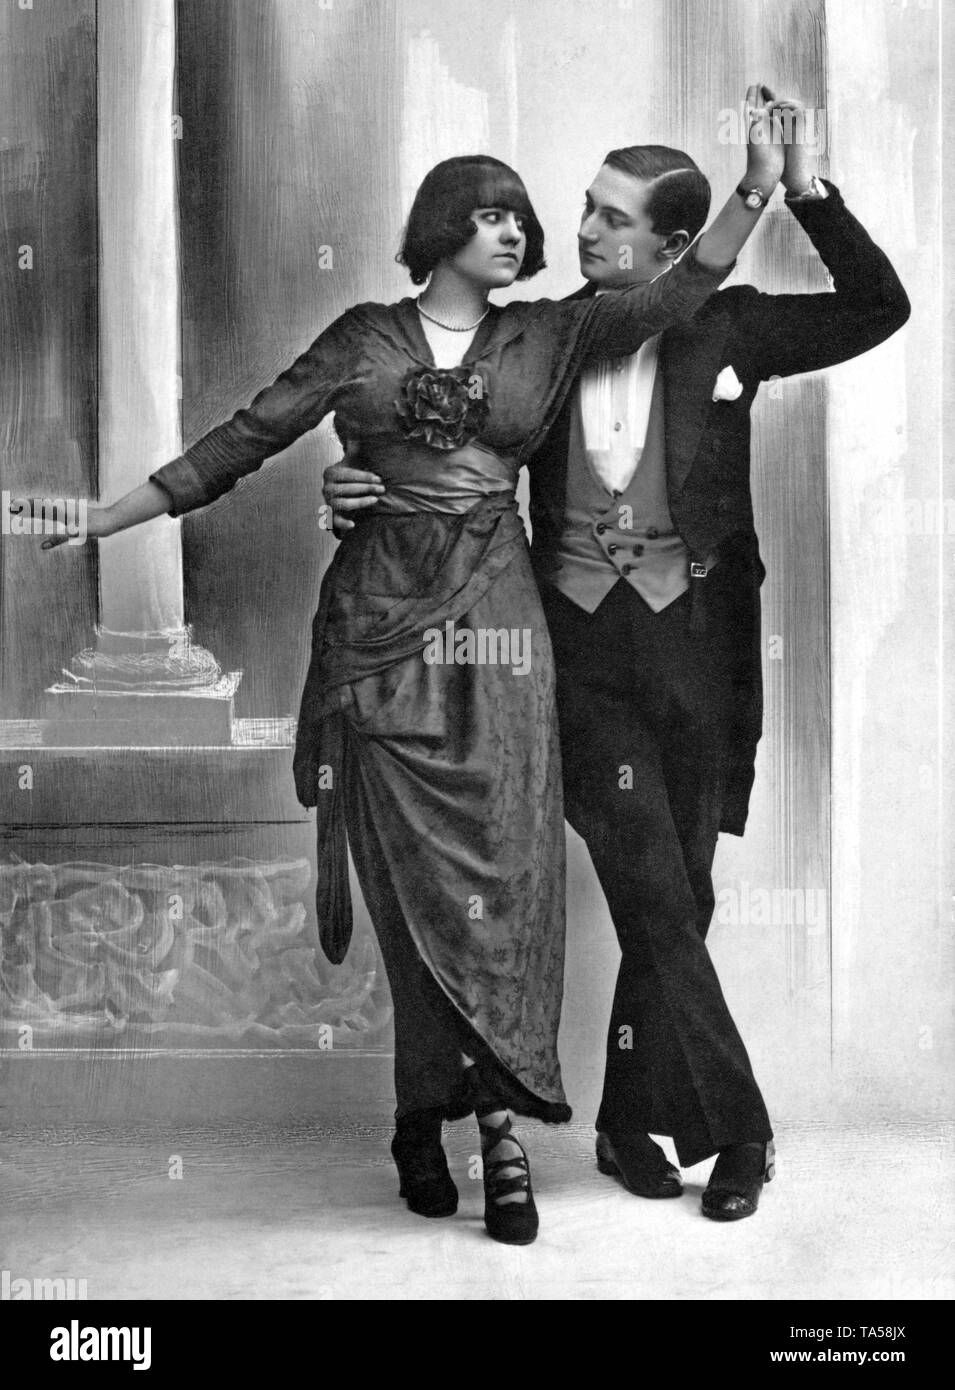 Couple danse avec regard sérieux, autour de 1910, Allemagne Banque D'Images